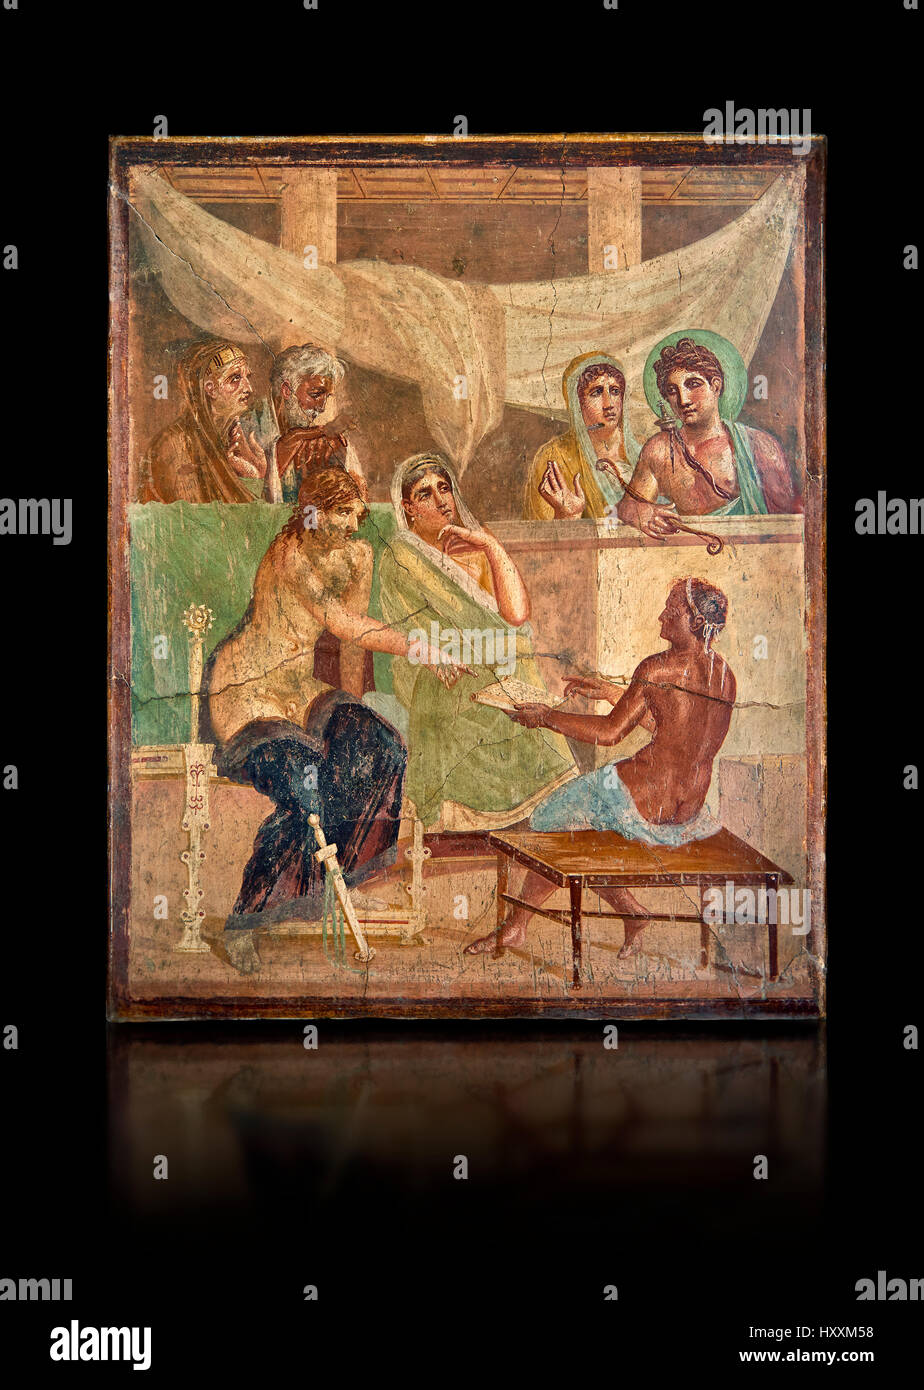 Fresco romano de pintura mural representando la historia de Admetus , Pompeya casa del poeta trágico , inv 9026, Nápoles, Museo Arqueológico Nacional. Foto de stock